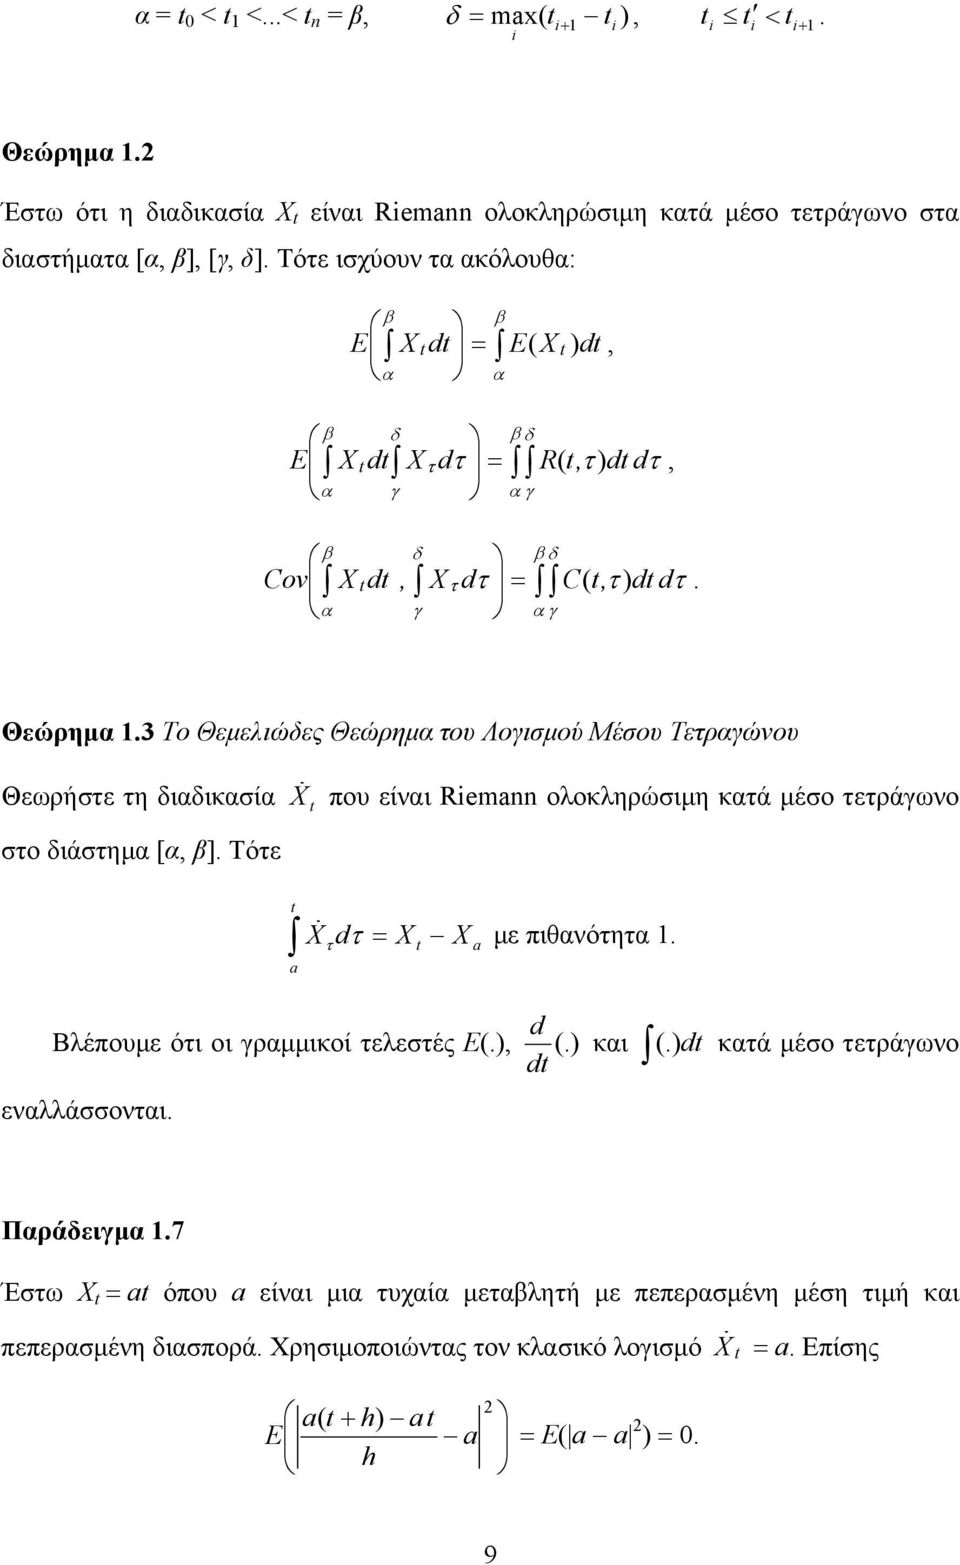 διάστηµα [α, β] Τότε X που είναι Remann ολοκληρώσιµη κατά µέσο τετράγωνο a X dτ X X µε πιθανότητα τ a d Βλέπουµε ότι οι γραµµικοί τελεστές Ε(, ( d εναλλάσσονται και ( d κατά µέσο